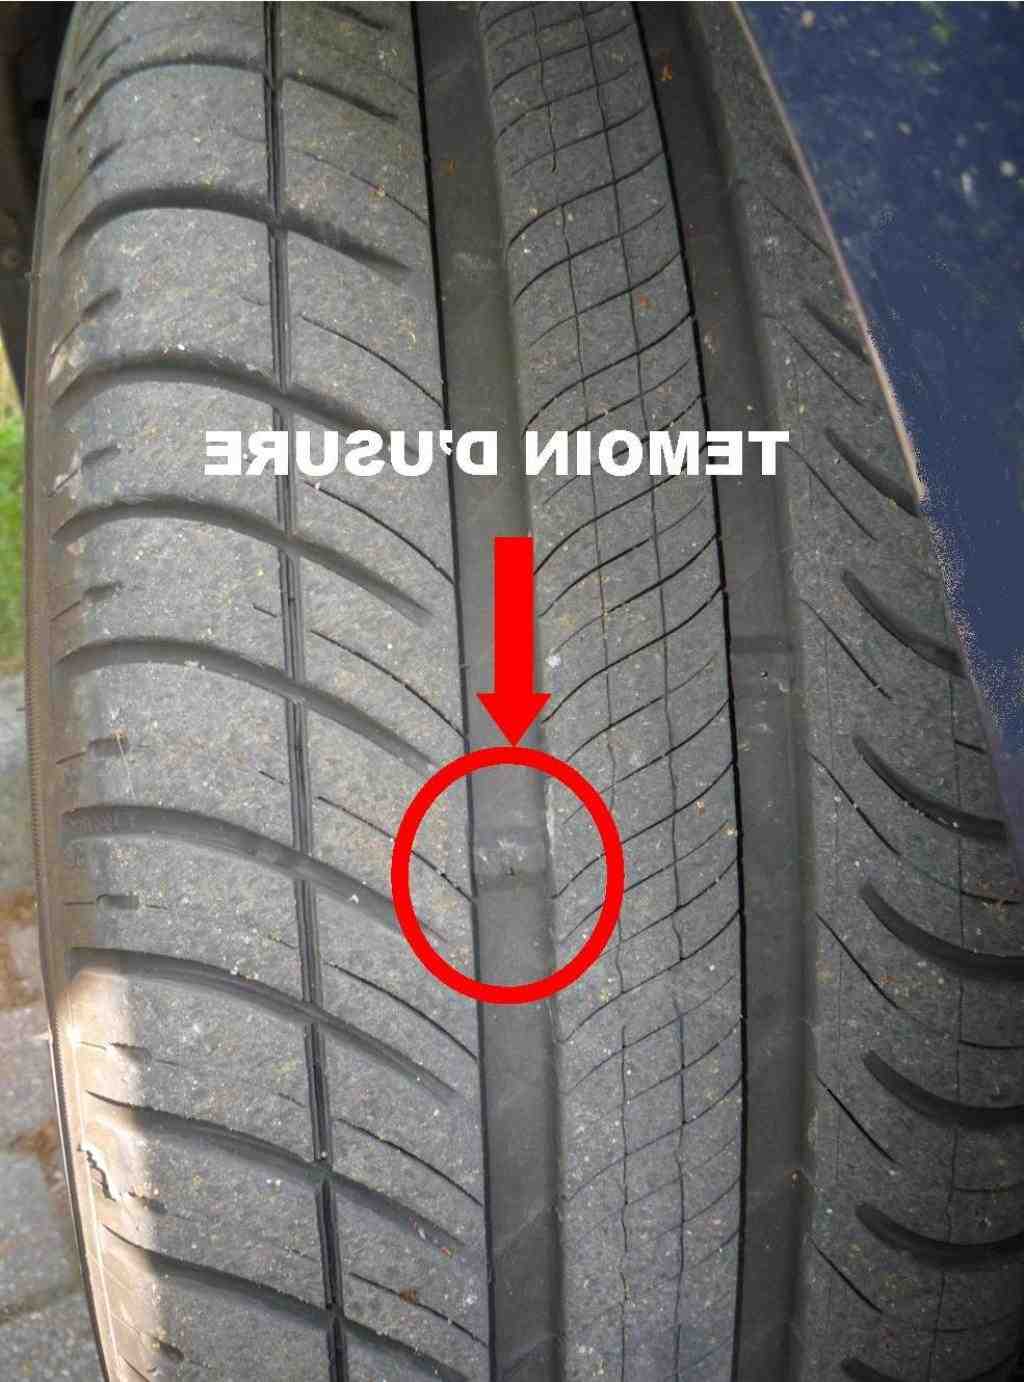 Comment mesurez-vous l'usure d'un pneu?